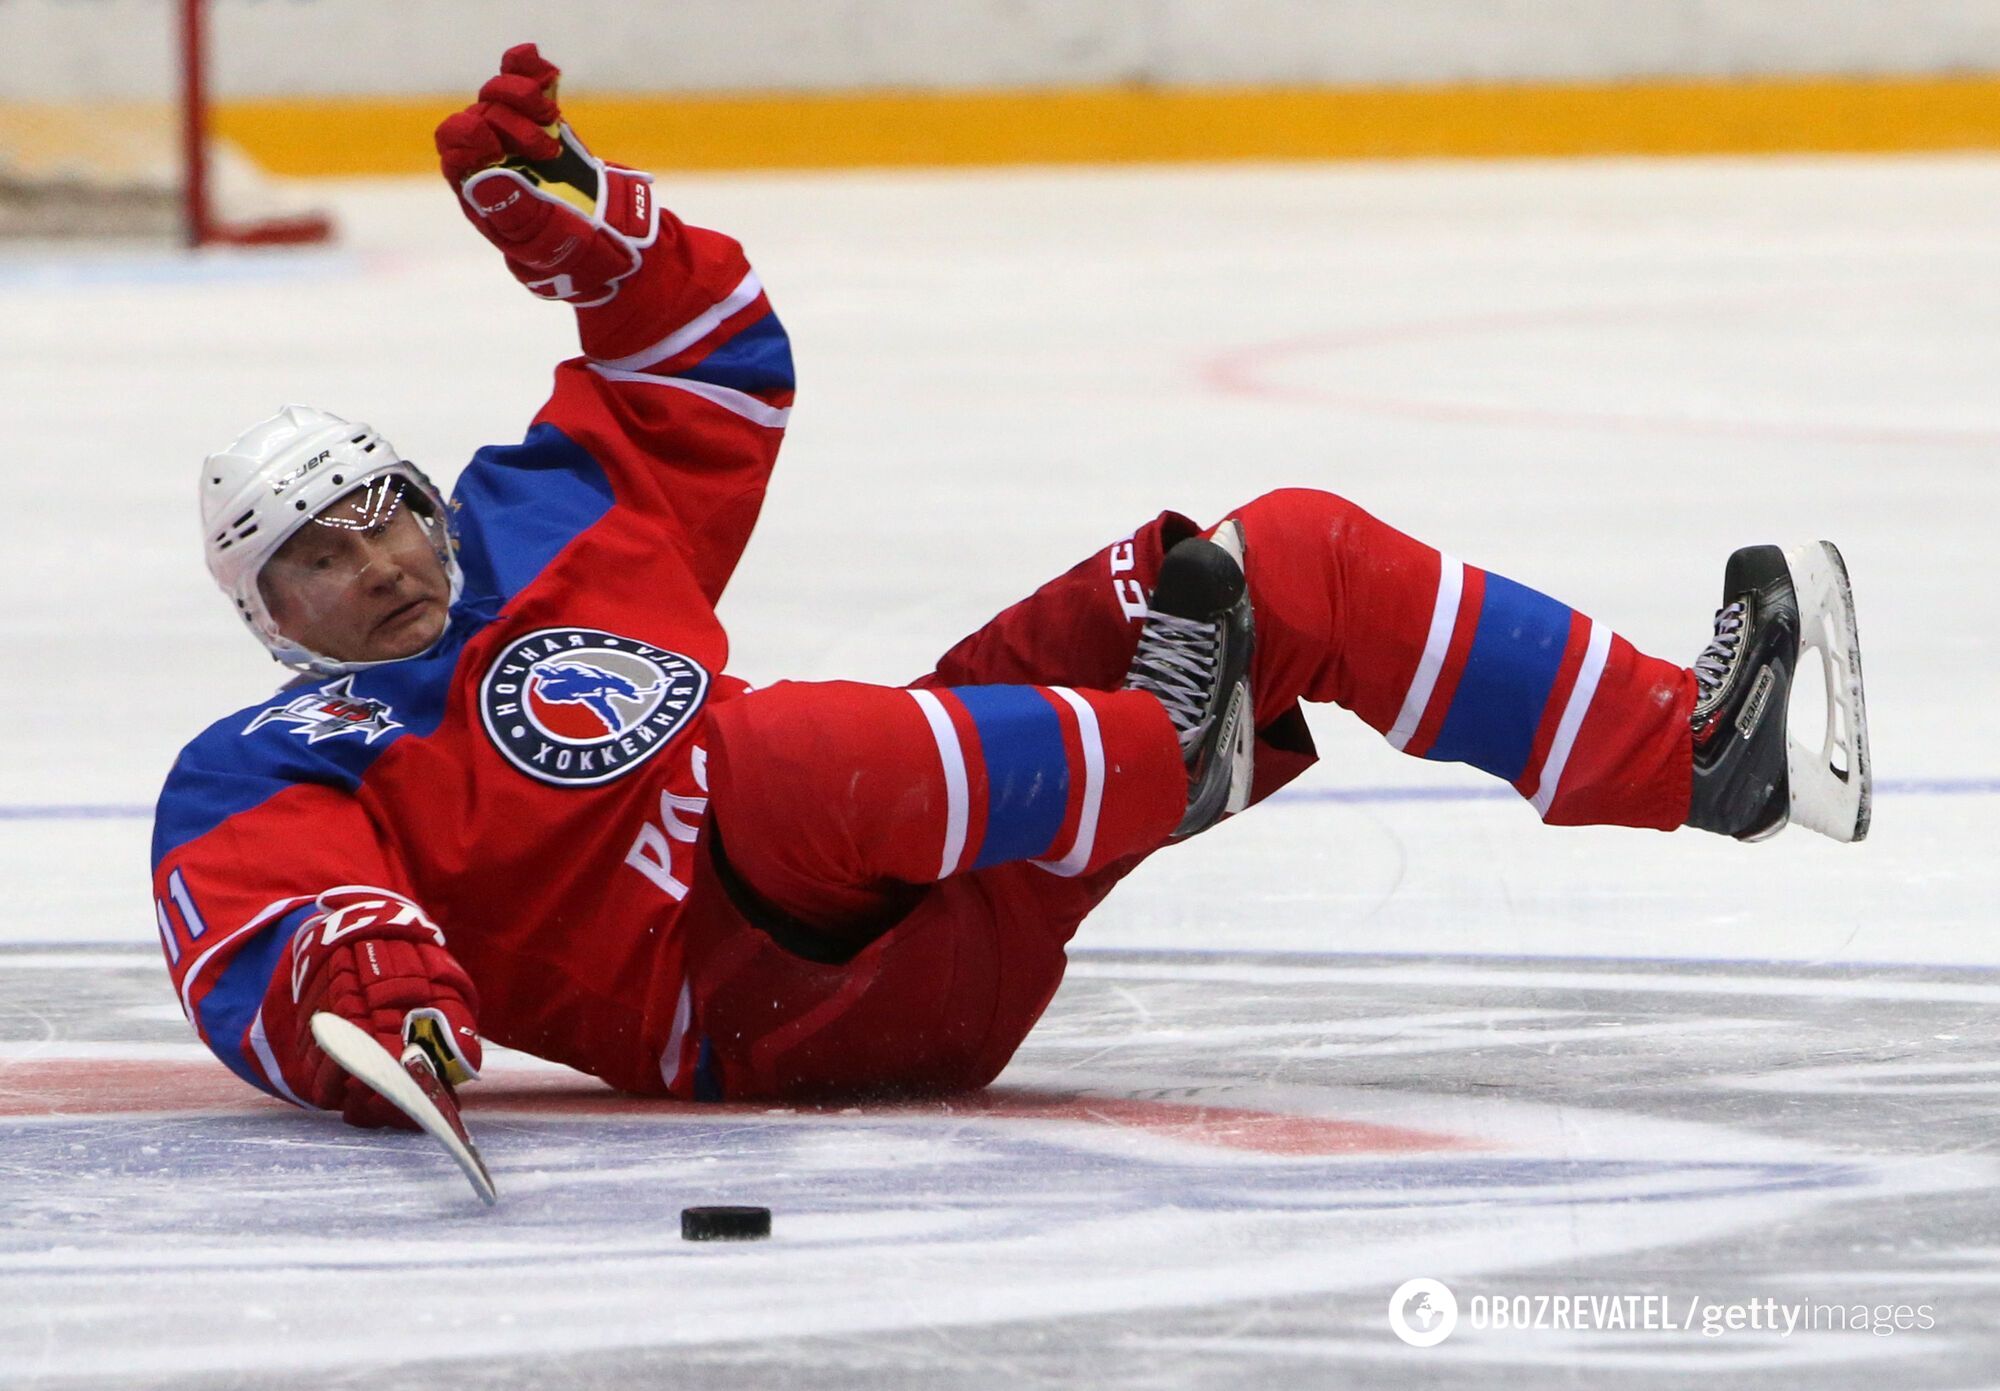 Putin playing hockey